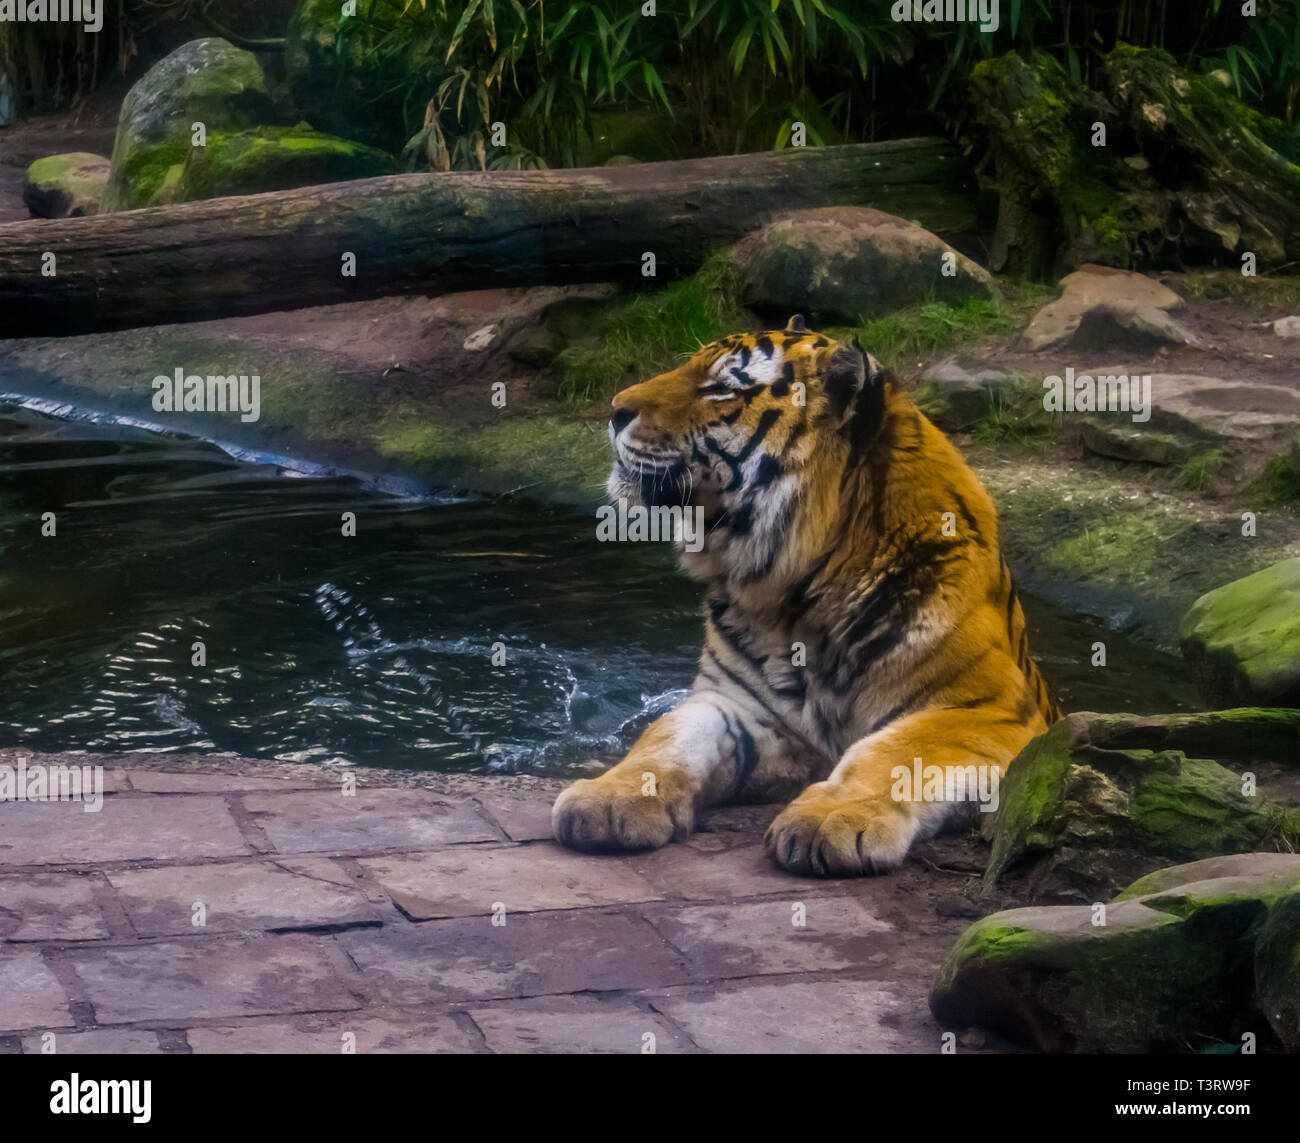 Primo piano di una tigre siberiana godendo di una vasca da bagno, balneazione mammifero, in via di estinzione specie animale dalla Siberia Foto Stock